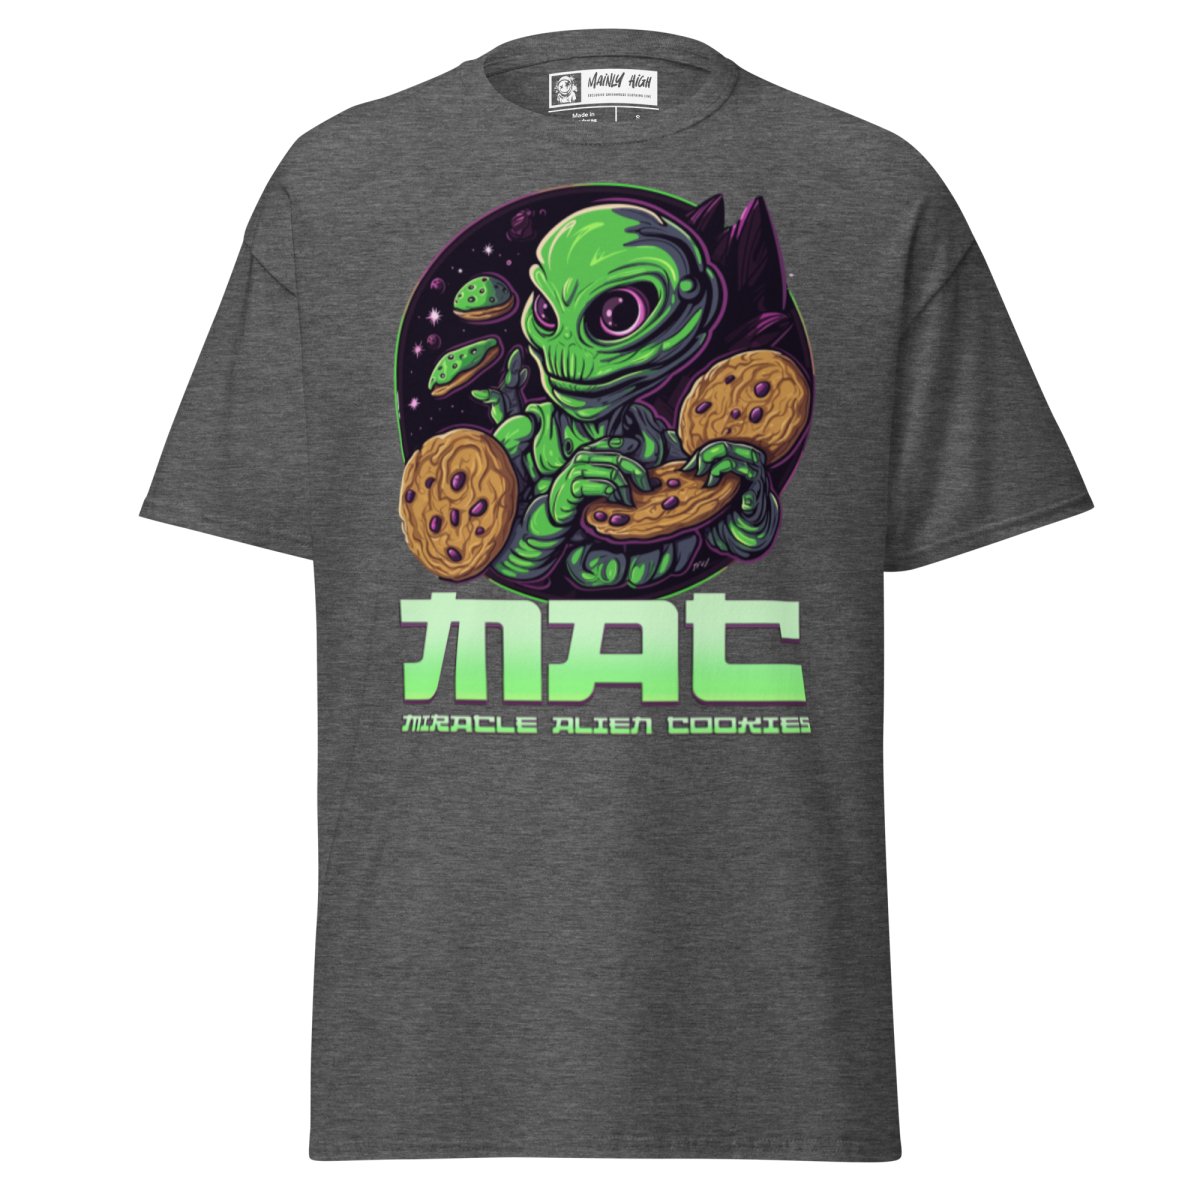 M.A.C. T-Shirt - Mainly High